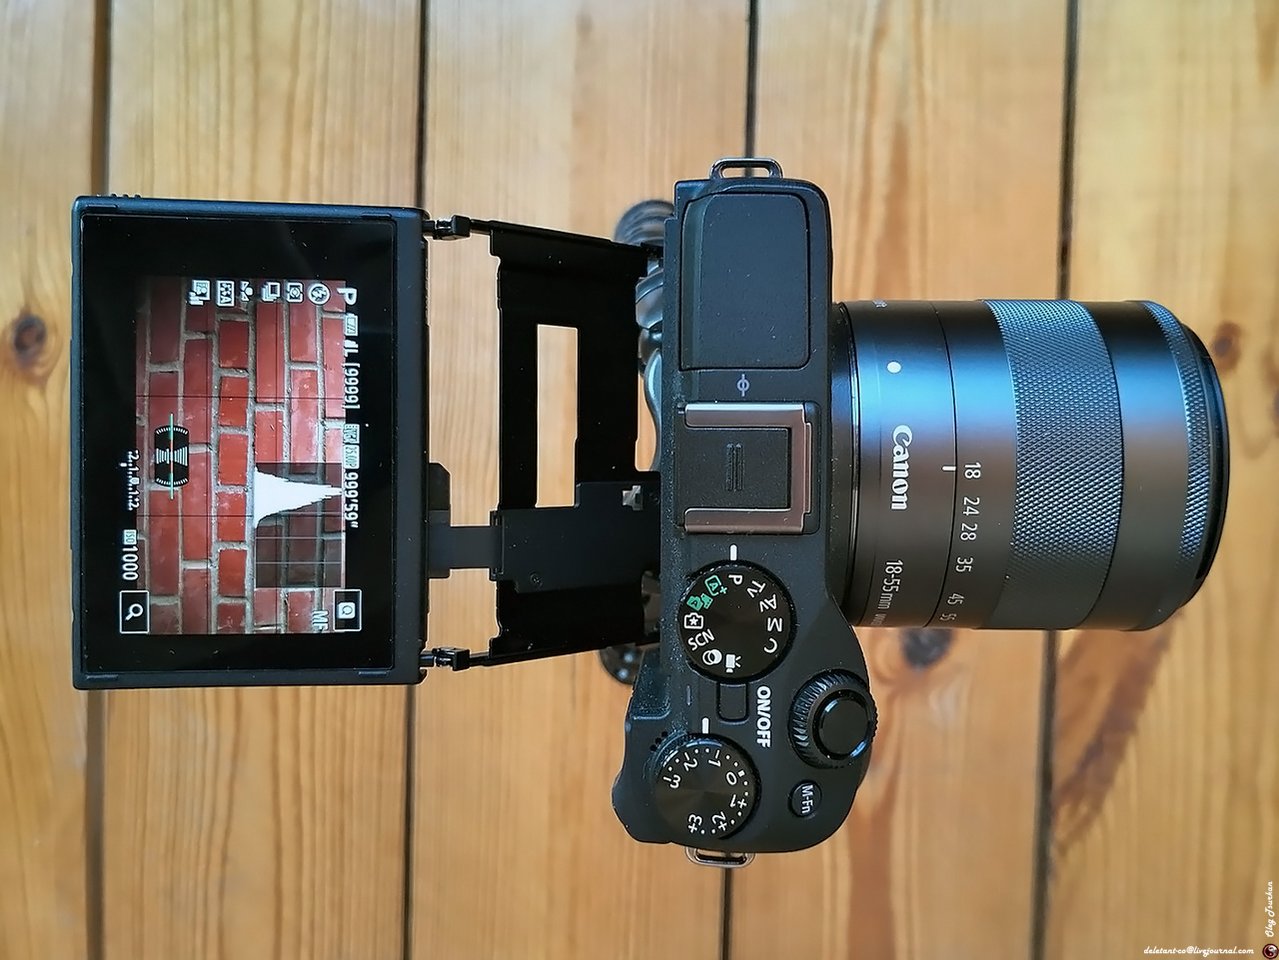 Canon EOS M3 kit 18-55